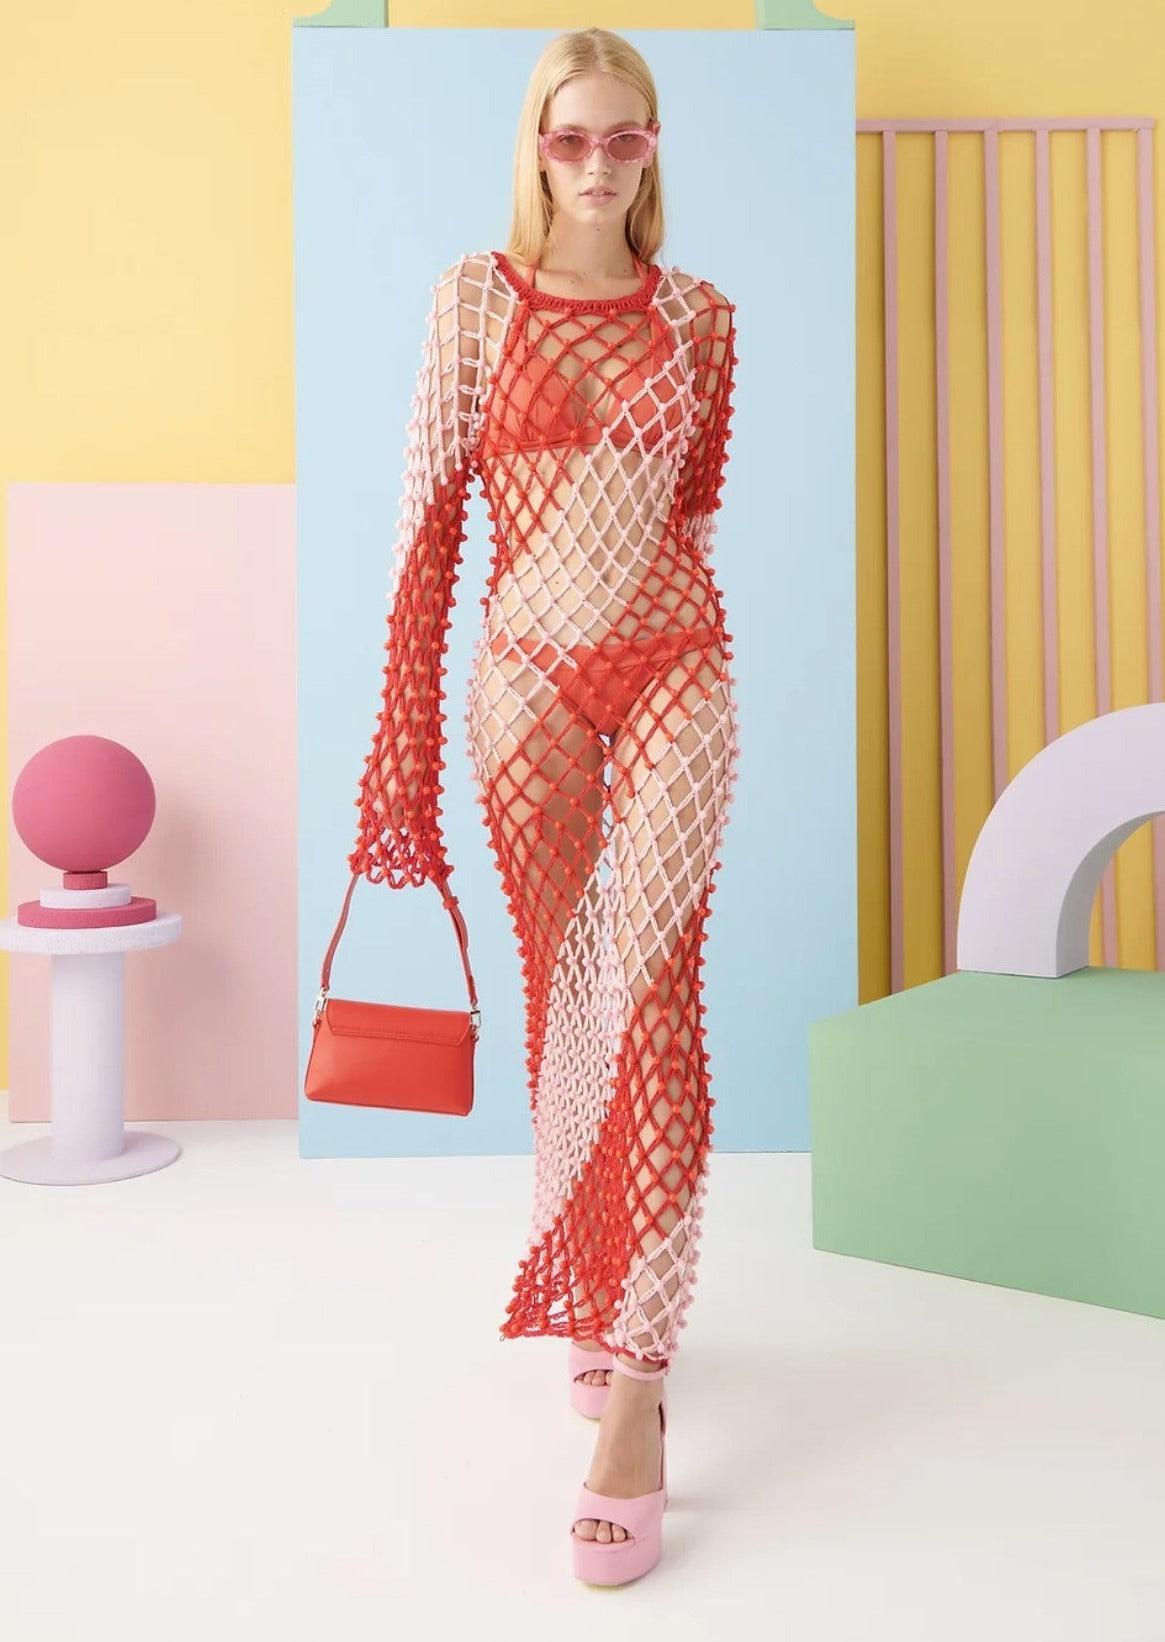 CeliaB - Sailor Crochet Dress - OutDazl